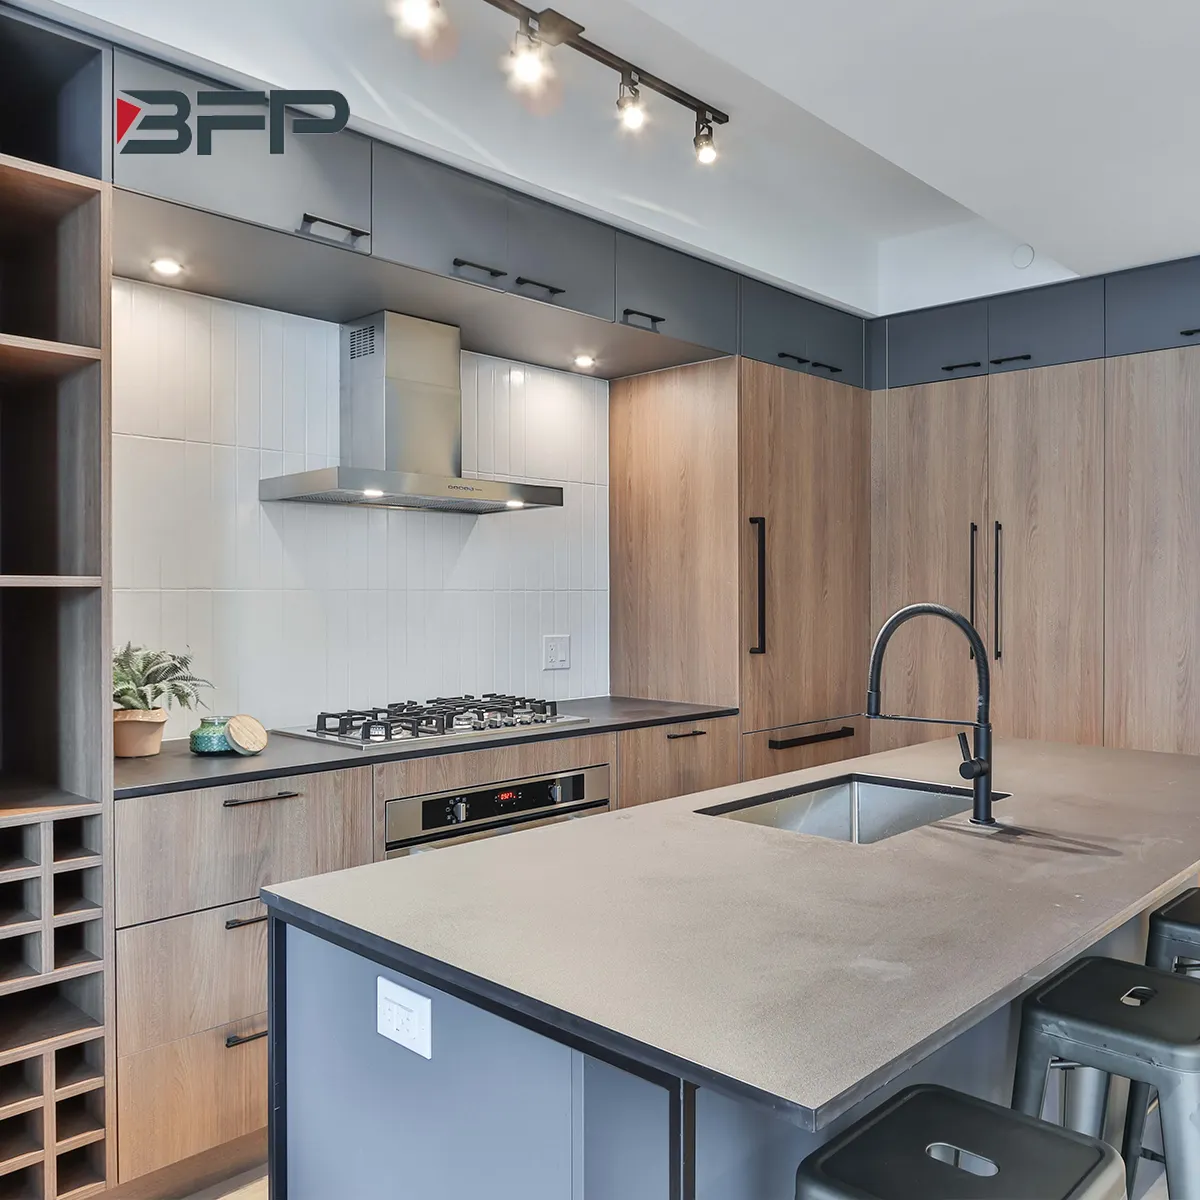 Fancy Modular Kitchen cabinet european style Smart kitchen Cabinet